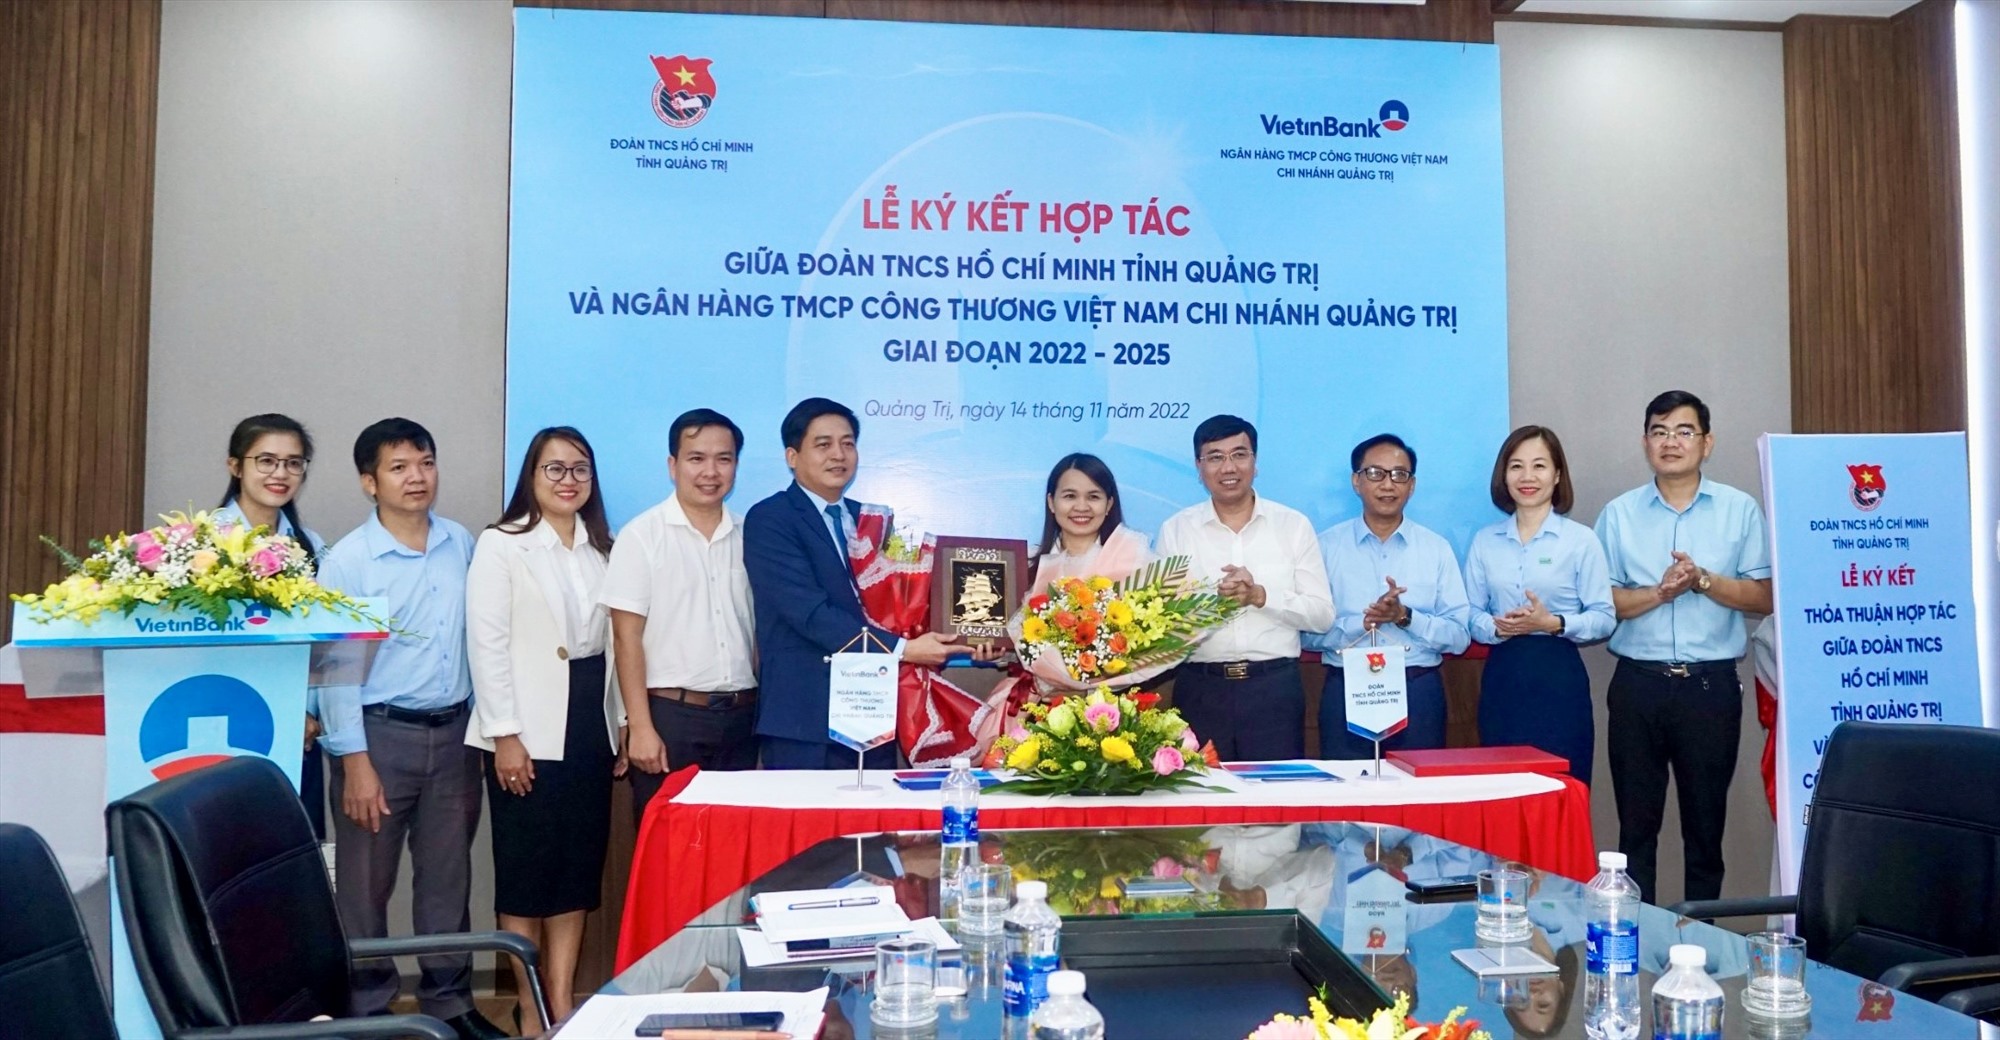 Ông Nguyễn Đức Đồng, Giám đốc NHNN tỉnh Quảng Trị chúc mừng thành công lễ ký kết hợp tác- Ảnh: Trung Dũng